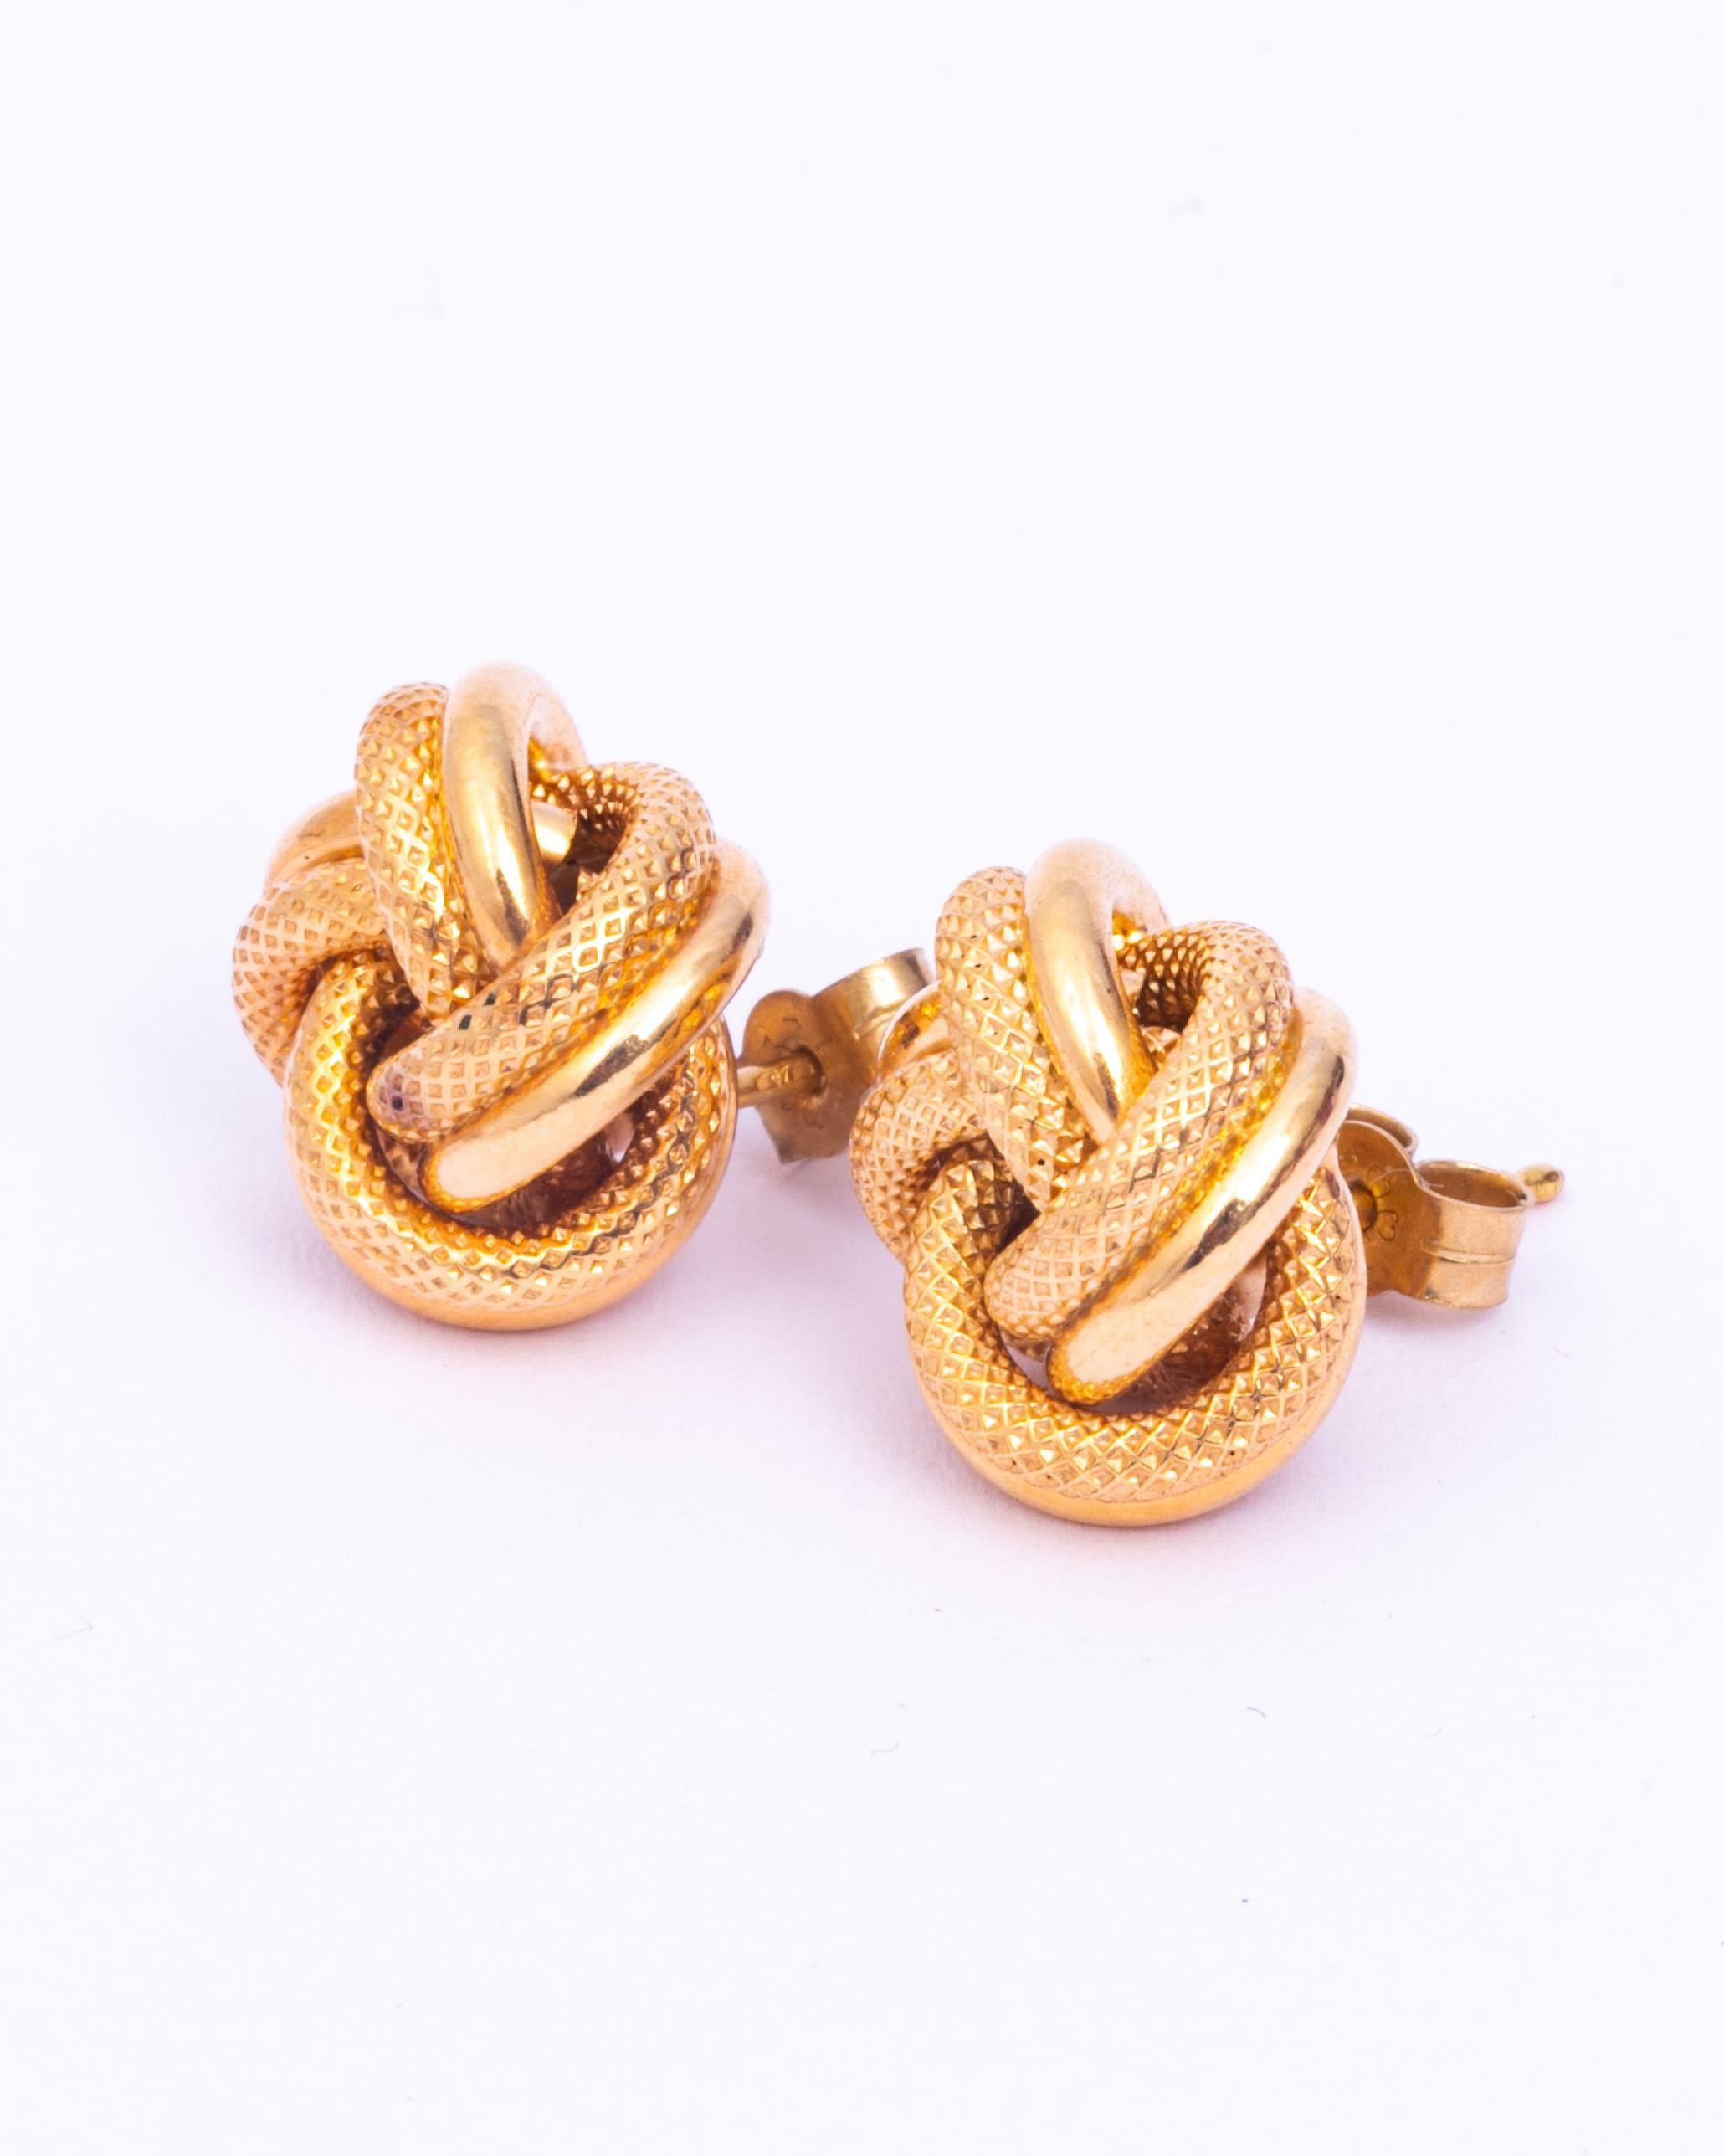 Diese Ohrringe sind sehr stilvoll und bestehen aus glänzendem 9-karätigem Gold. Die Knoten haben ein paar glatte Stränge und ein paar Stränge, die fein eingraviert sind und eine wunderschöne Textur aufweisen.

Durchmesser: 17 mm 

Gewicht: 4,5 g